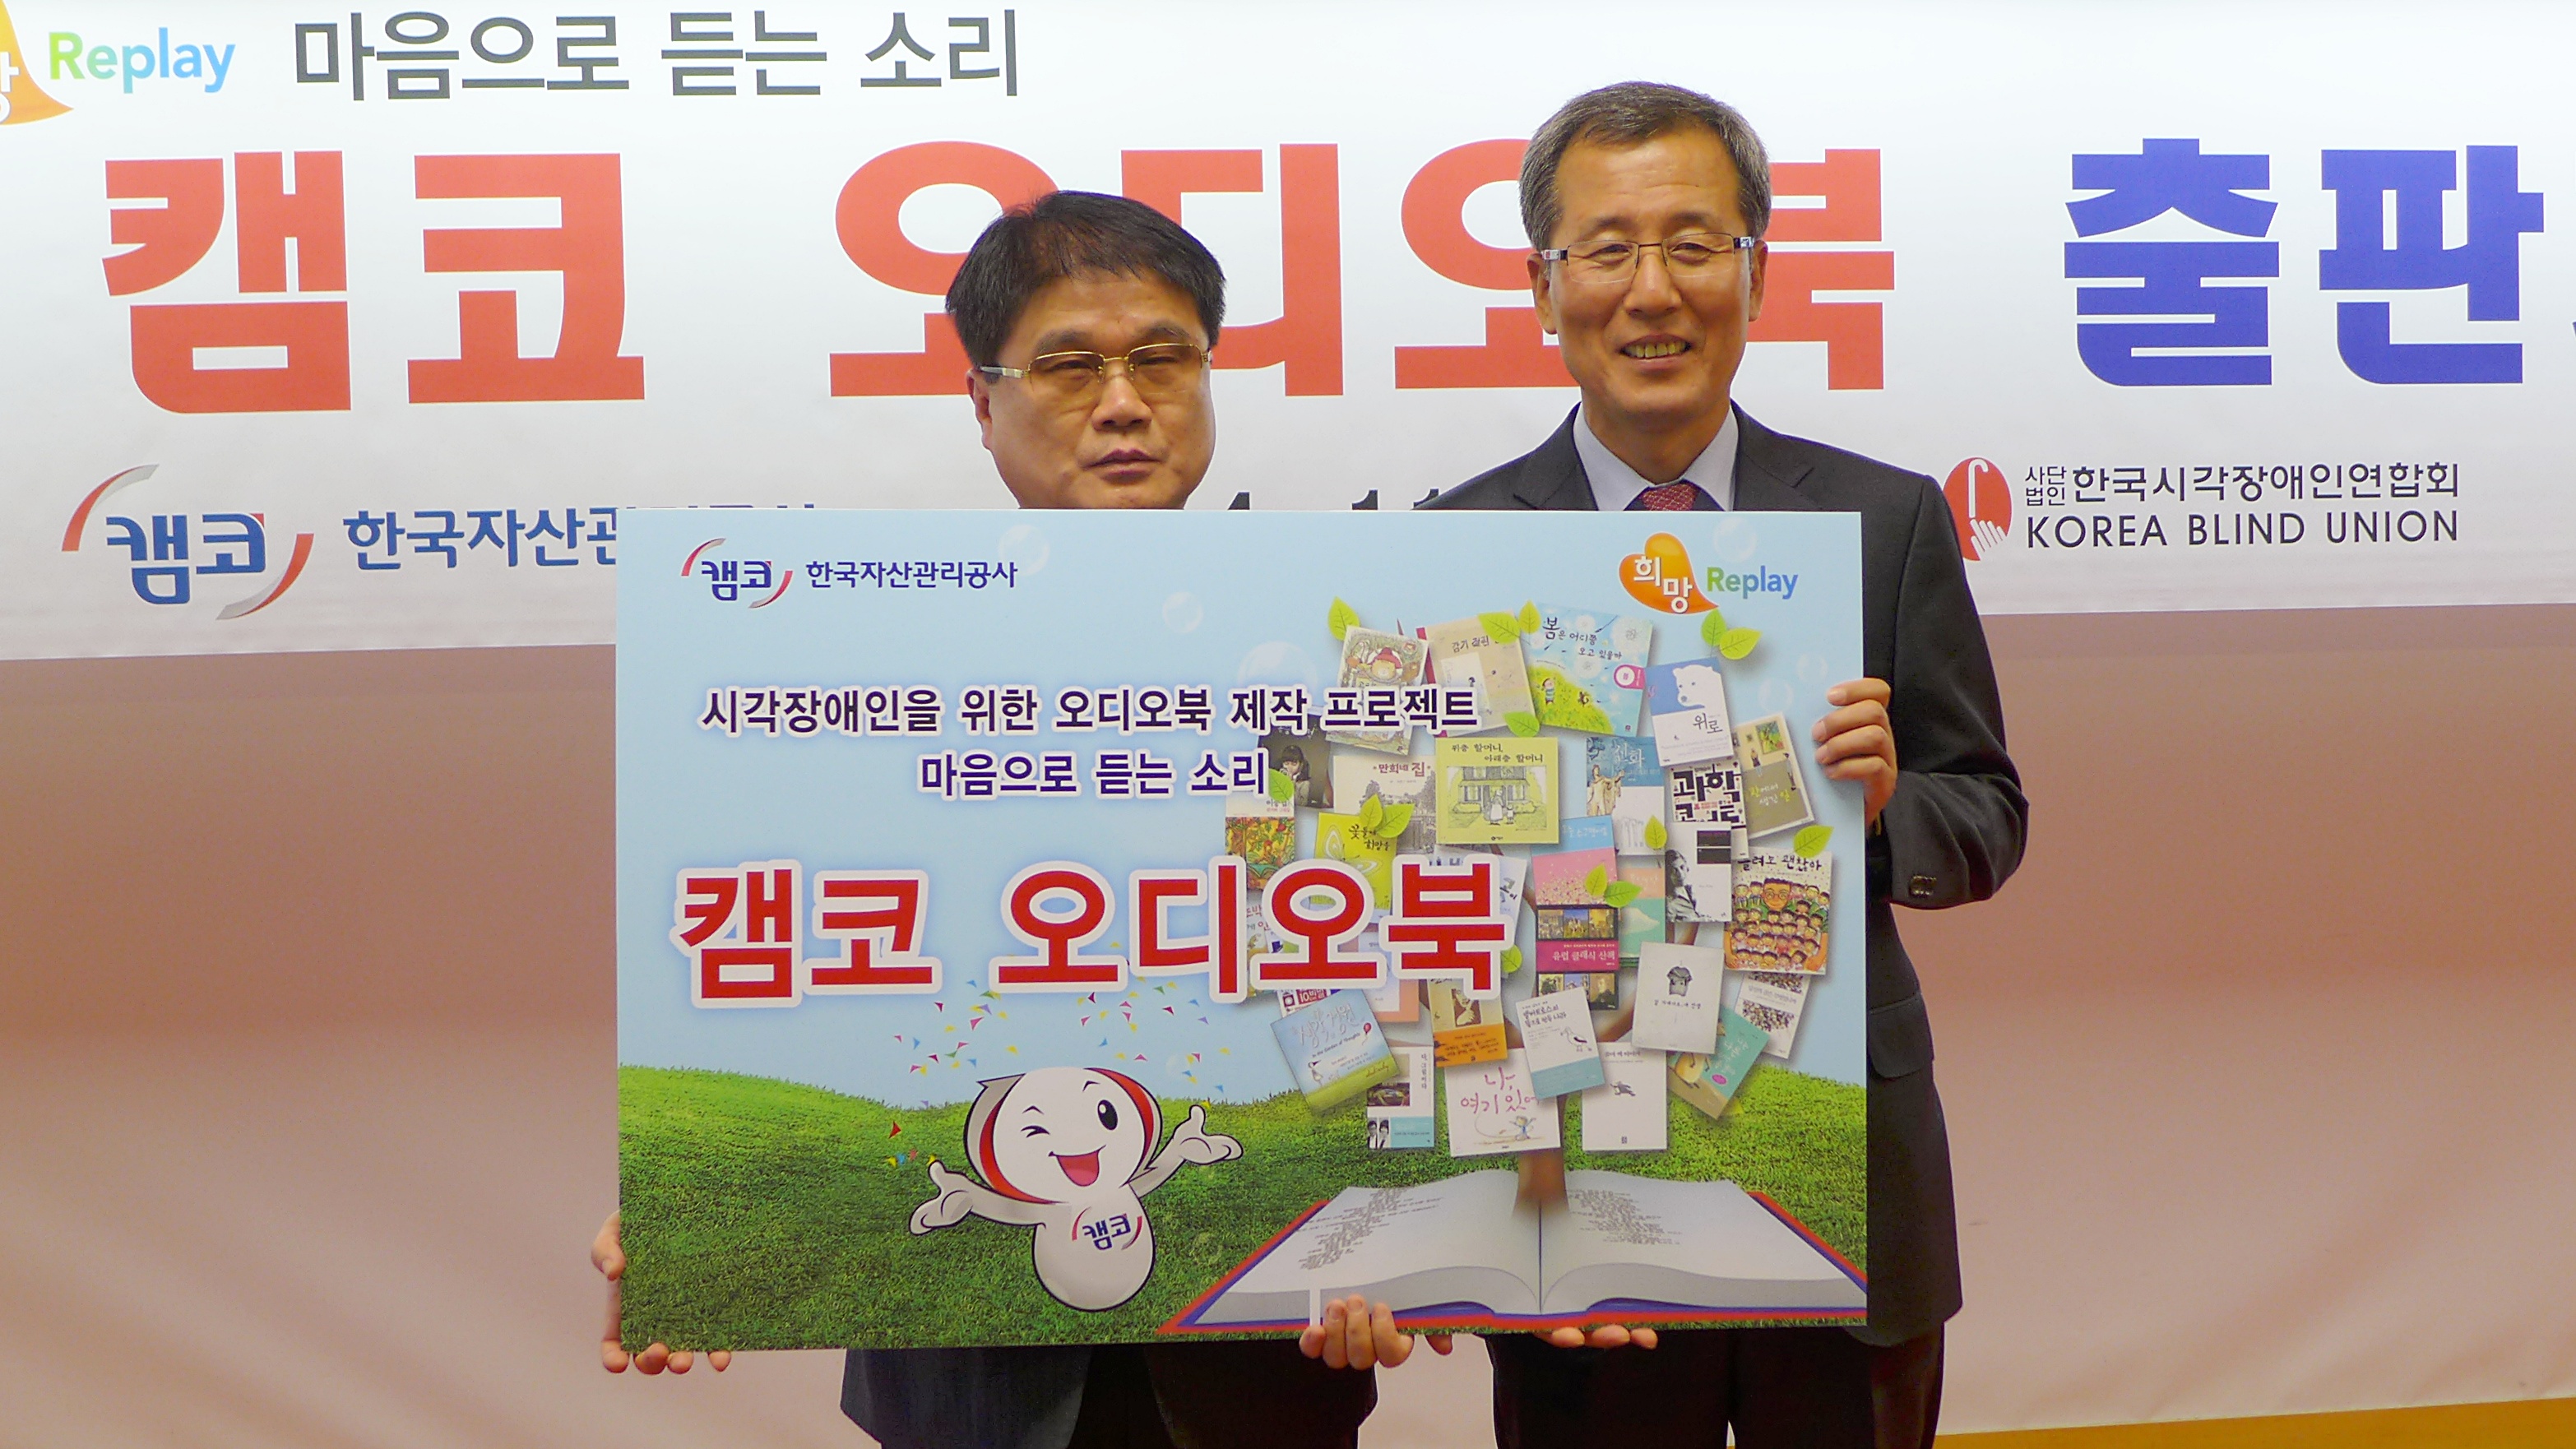 한국시각장애인연합회 이병돈 회장과 한국자산관리공사 홍영만 사장의 기념사진